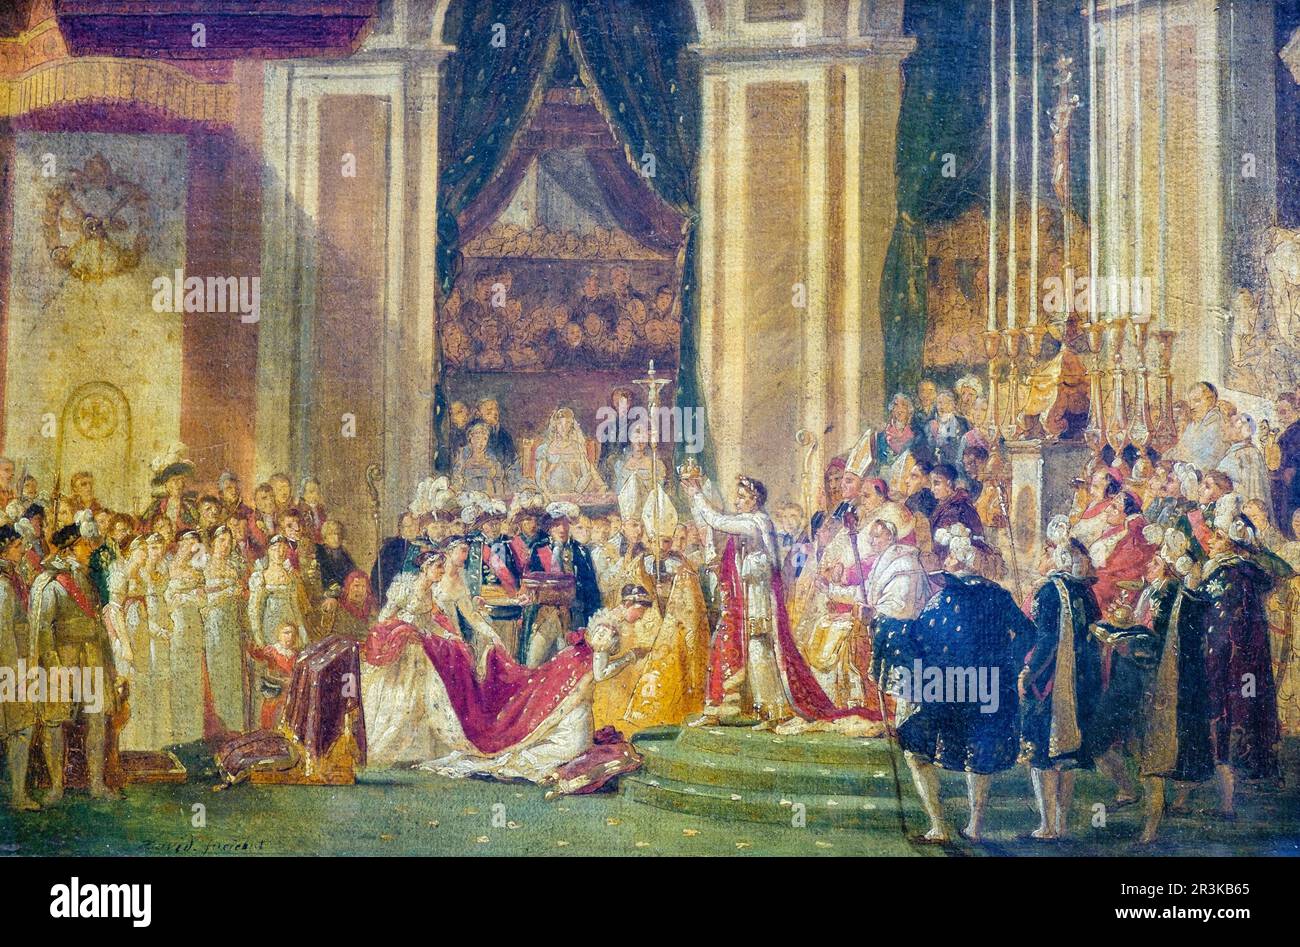 La consagración, Le Sacre de Napoléon, Jacques-Louis David, pintor oficial de Napoleón Bonaparte realizada entre 1805 y 1808, Museo del Louvre,museo nacional de Francia, Paris, France,Western Europe. Stock Photo